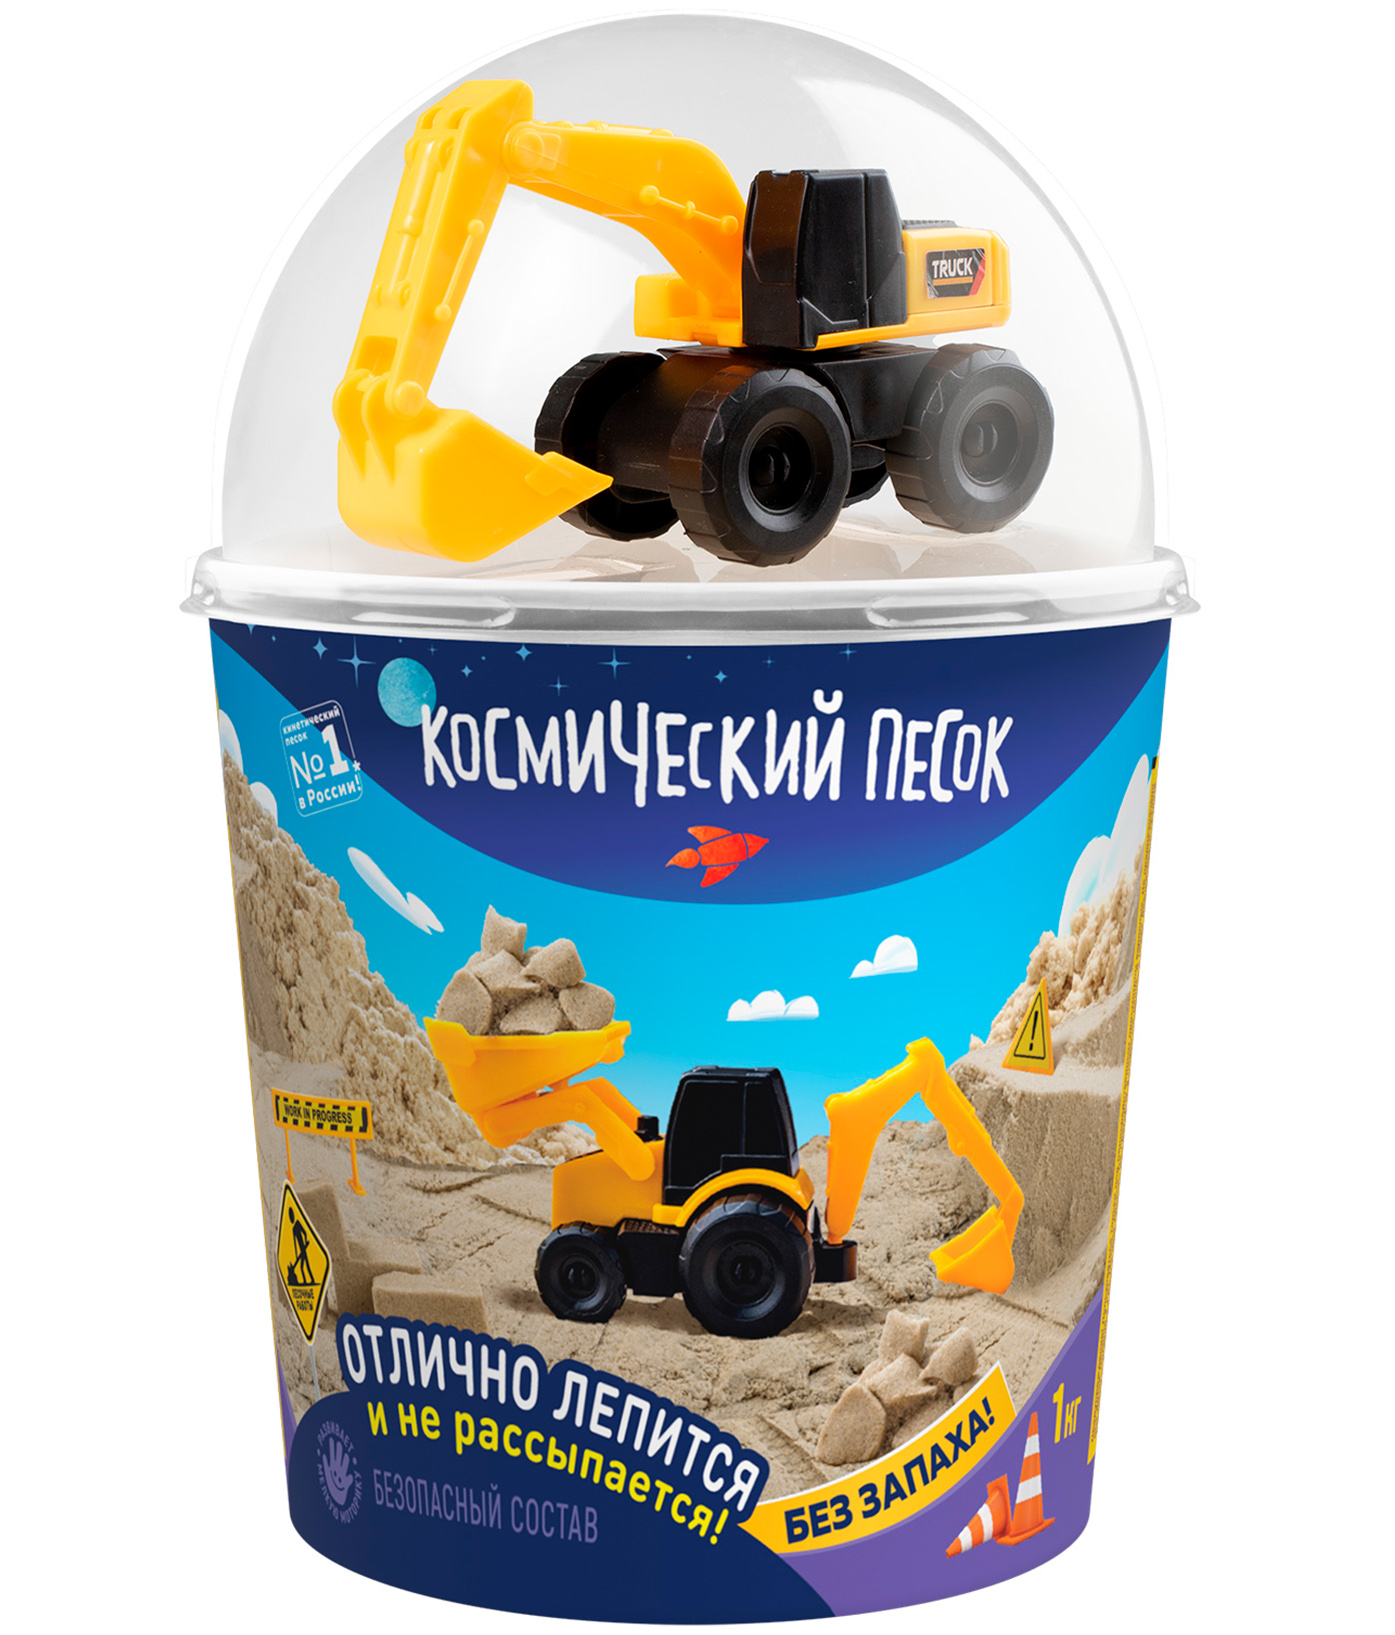 Кинетический песок Космический песок песочный, в наборе с машинкой-экскаватором, с 3 лет кинетический космический песок 2 кг в наборе с машинкой 2 шт бульдоз и экскав песоч